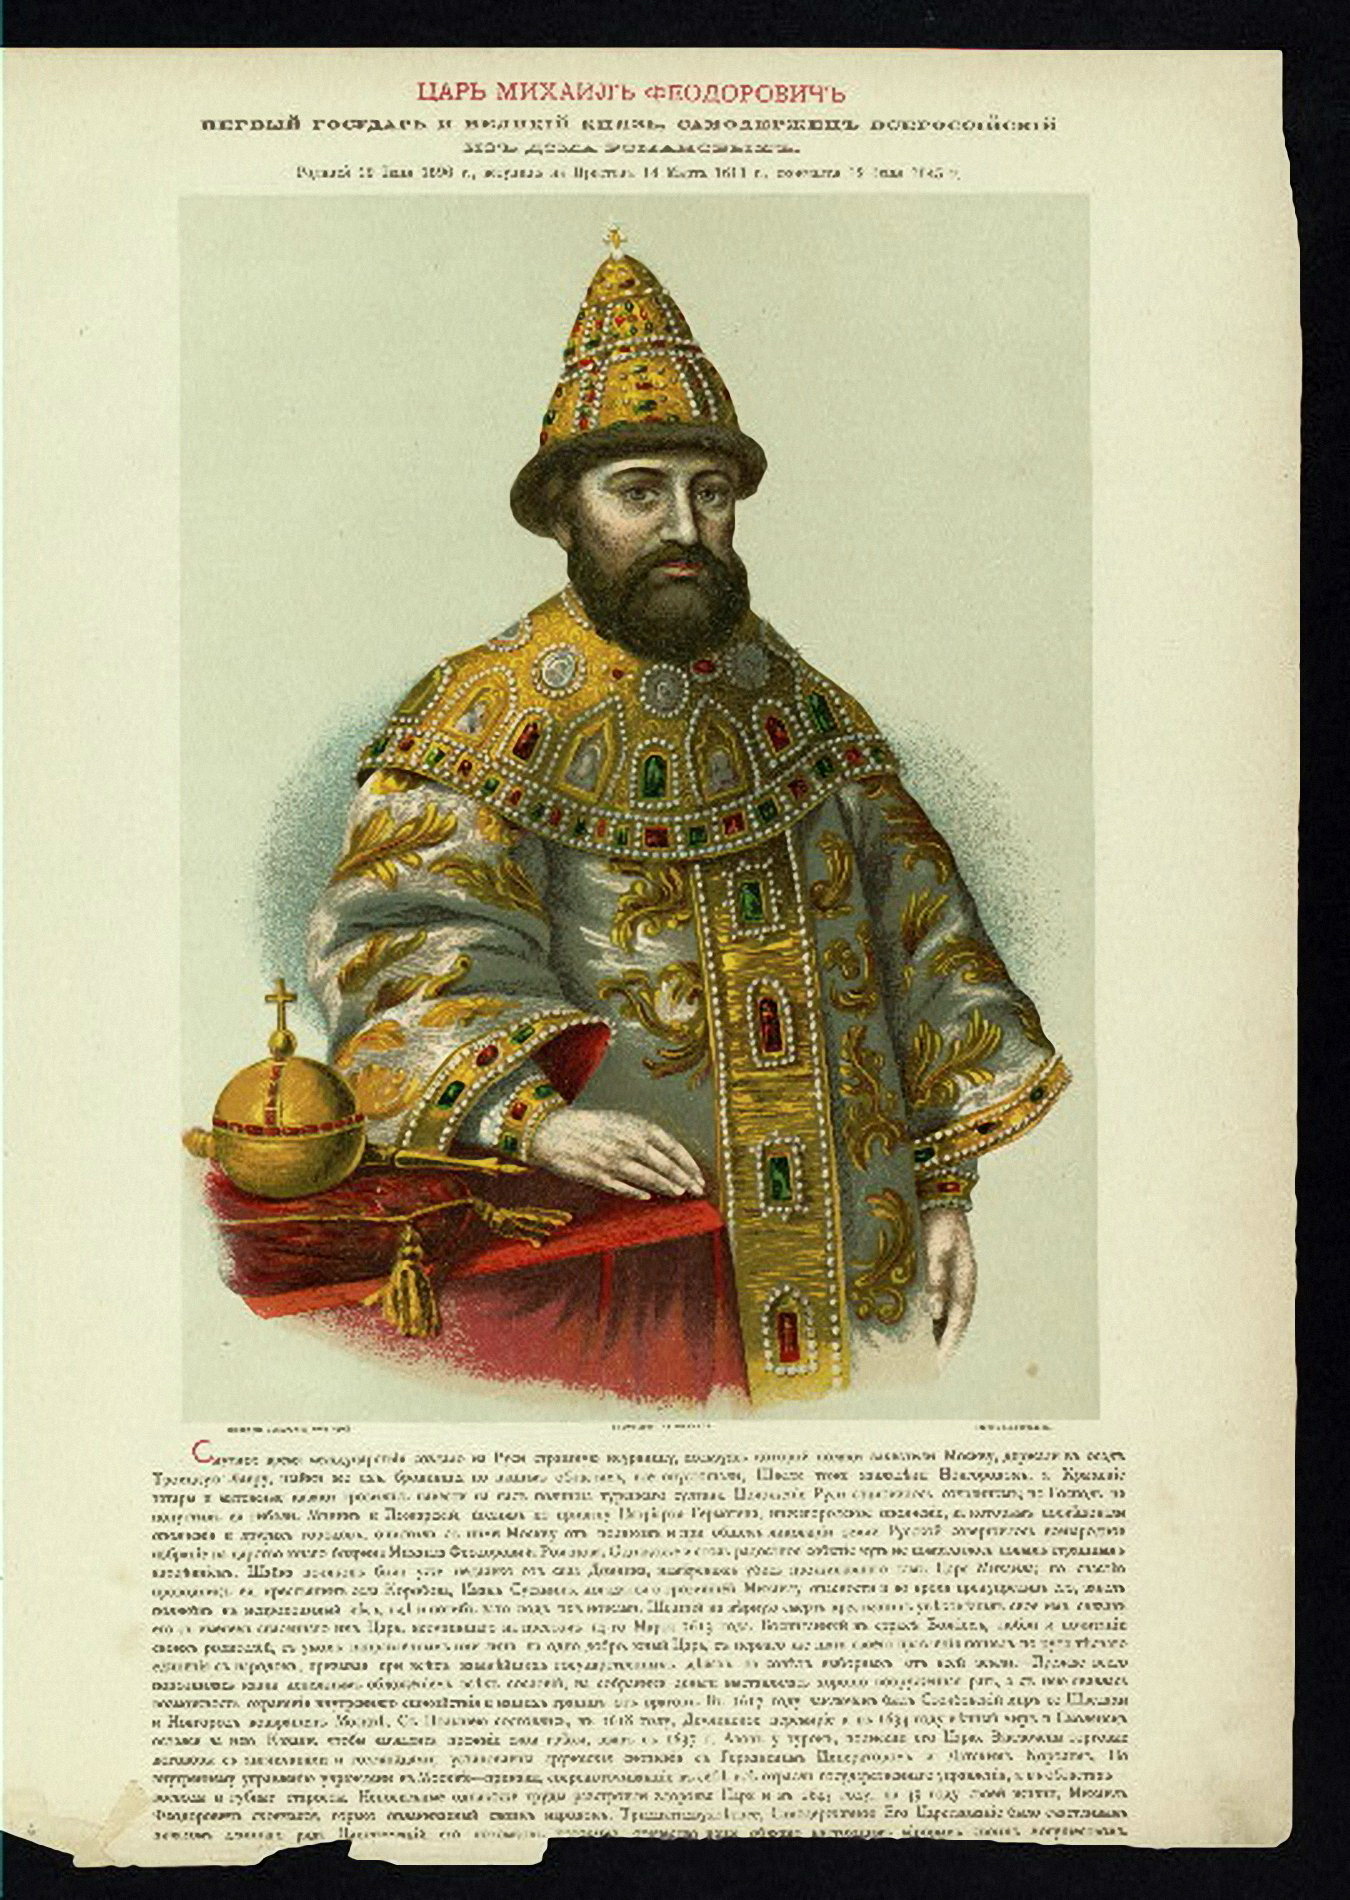 Царь с 1613 первый царь из династии Романовых